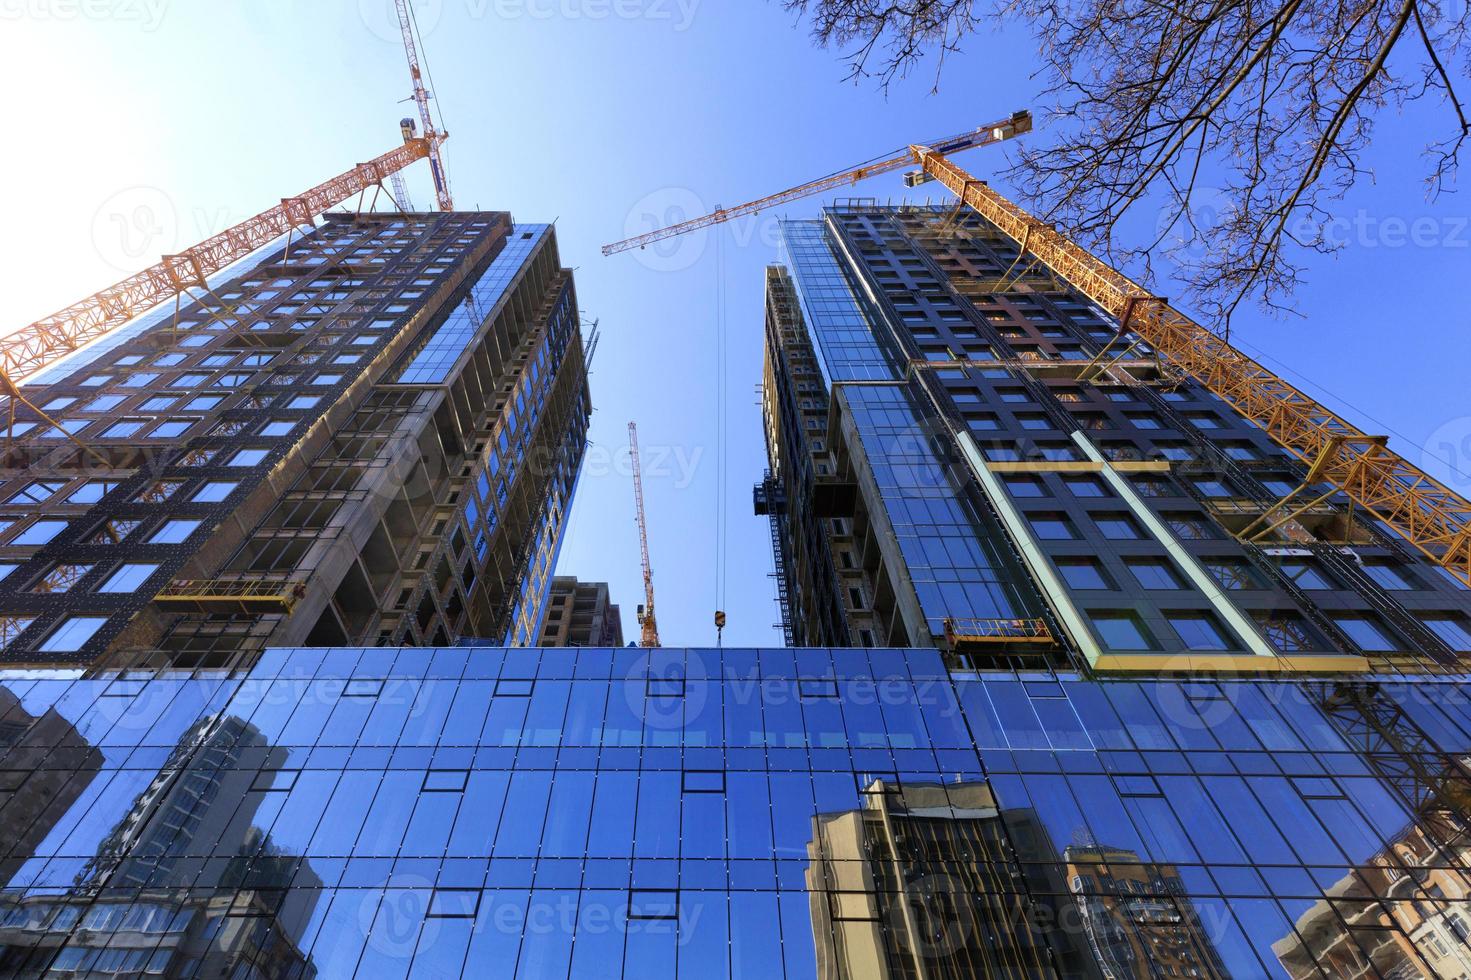 glasfasaden, en reflektion av den blå himlen och kranar nära en modern betongbyggnad under uppförande. foto